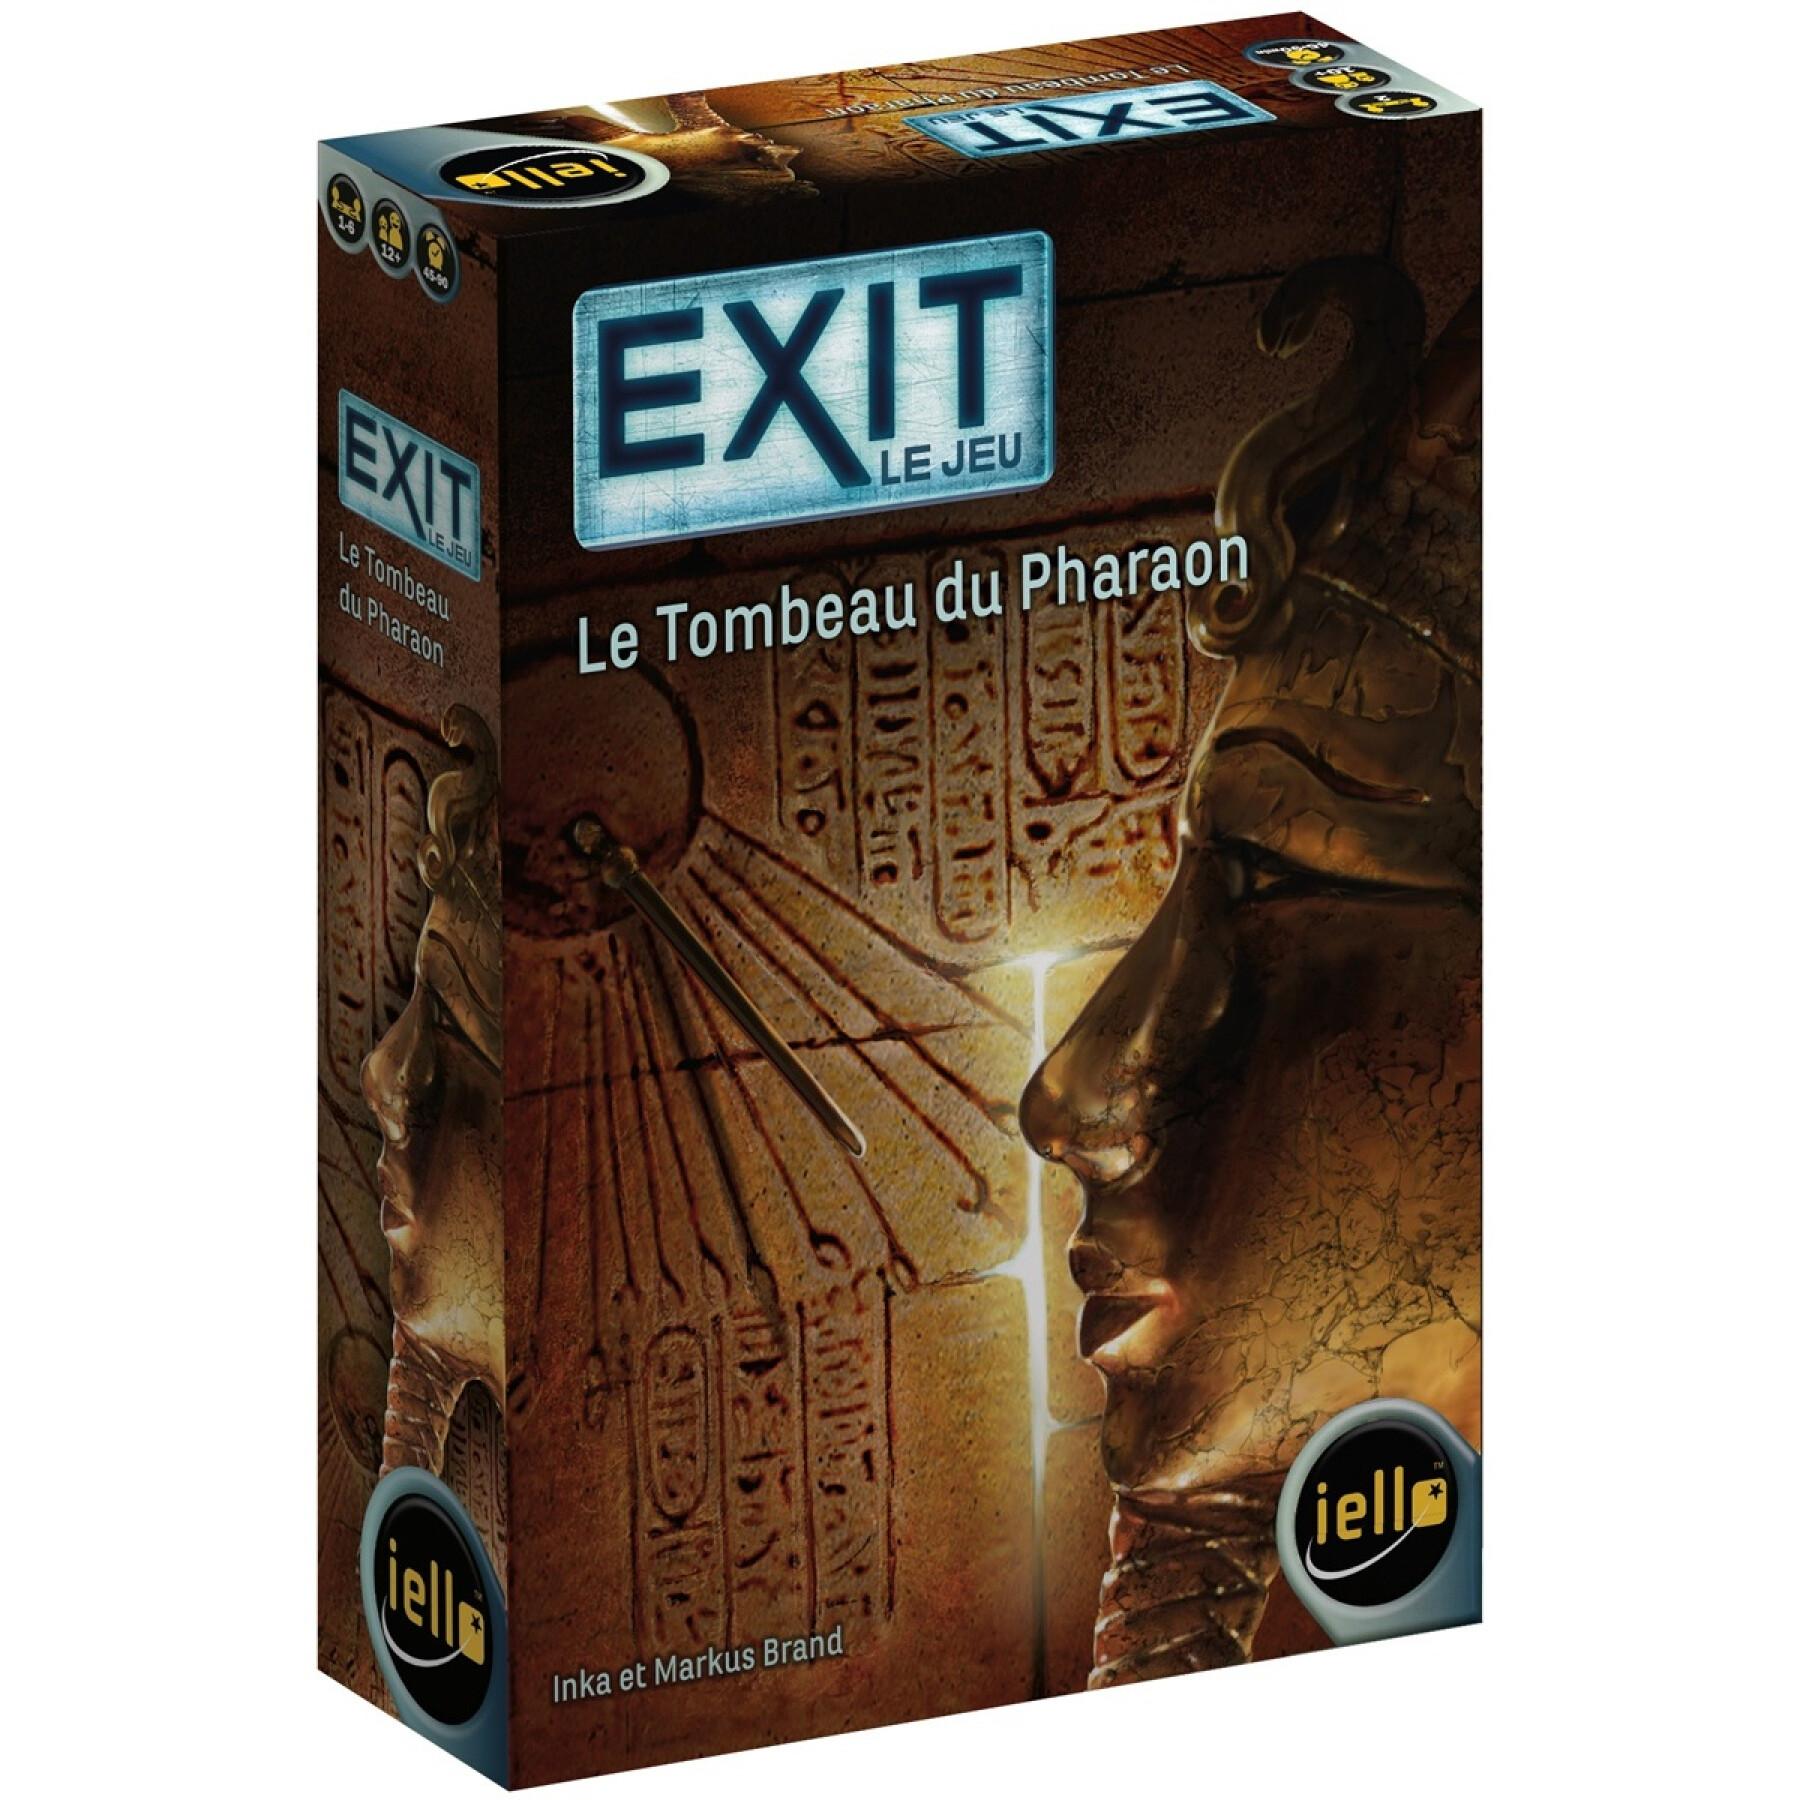 Rompicapo della tomba del faraone IELLO Exit